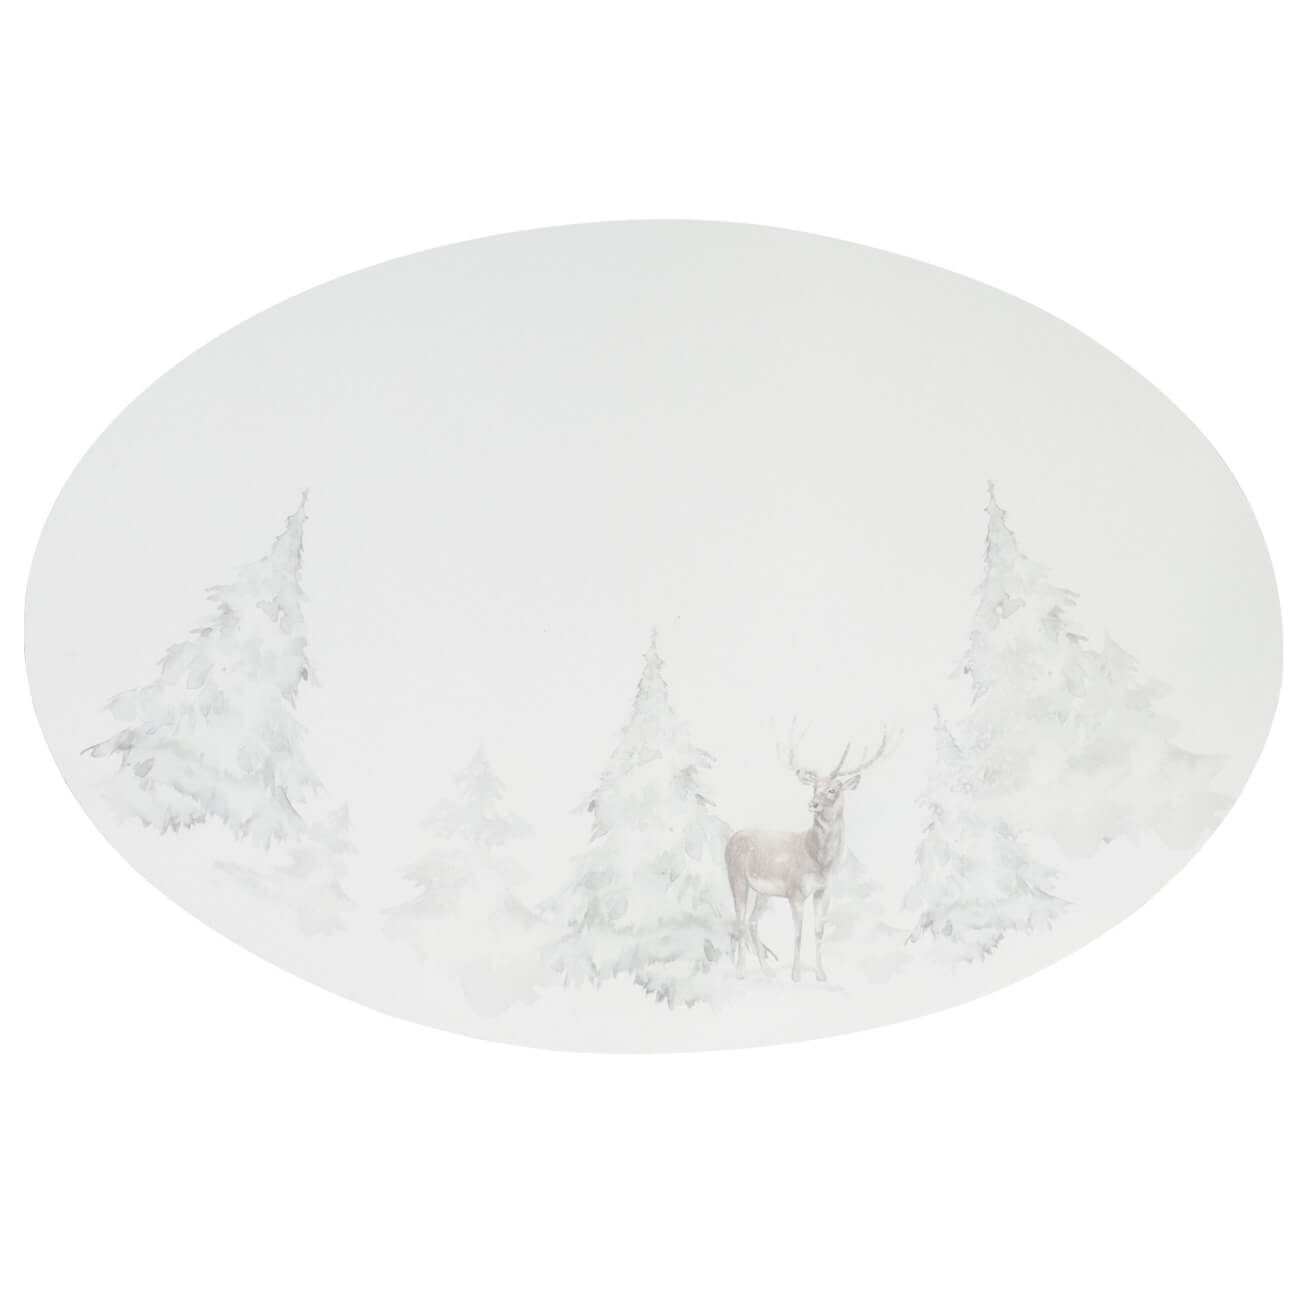 Салфетка под приборы, 30х45 см, ПВХ, овальная, белая, Олень в снежном лесу, Rock print салфетка под приборы 37x45 см пвх фигурная молочная rock